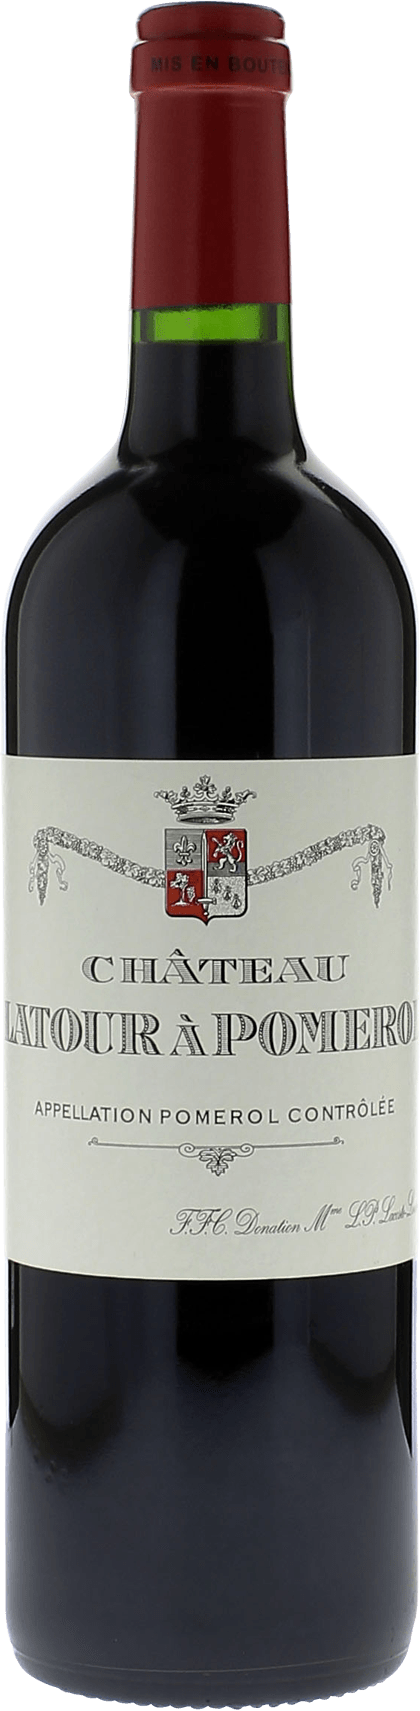 Latour  pomerol 2002  Pomerol, Bordeaux rouge